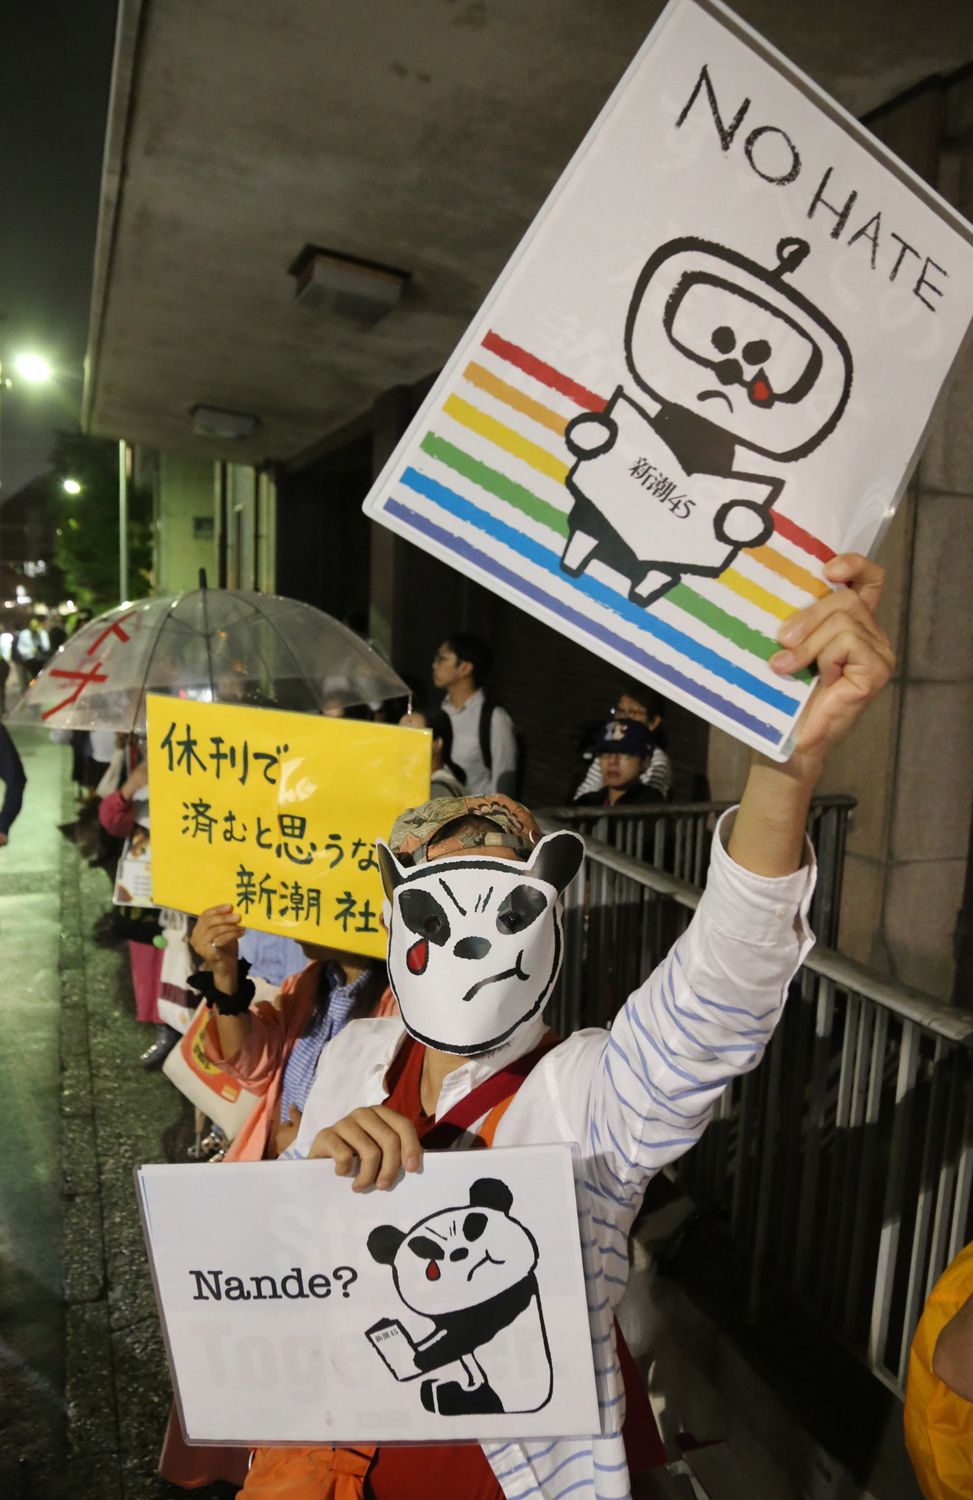 월간지 ‘신초 45’의 휴간으로 끝났다고 생각하지 말라고 신초샤 앞에서 항의집회를 갖는 사람들. 도쿄신문 제공